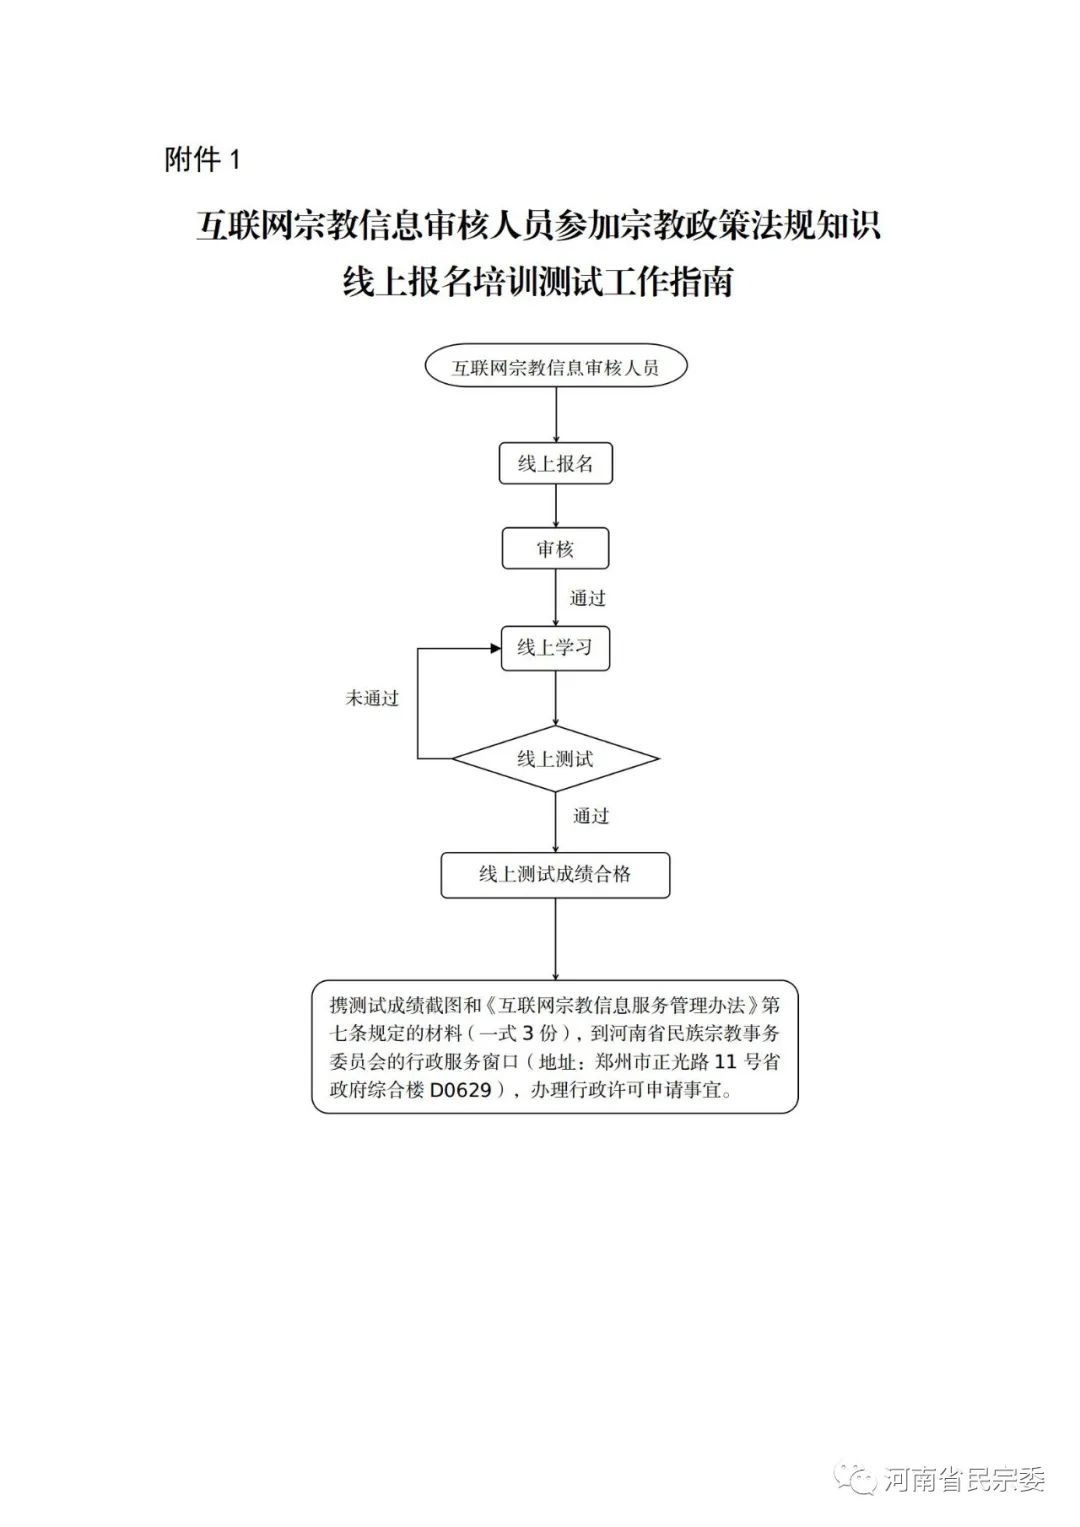 河南省民族宗教事务委员会关于办理互联网宗教信息服务许可的公告